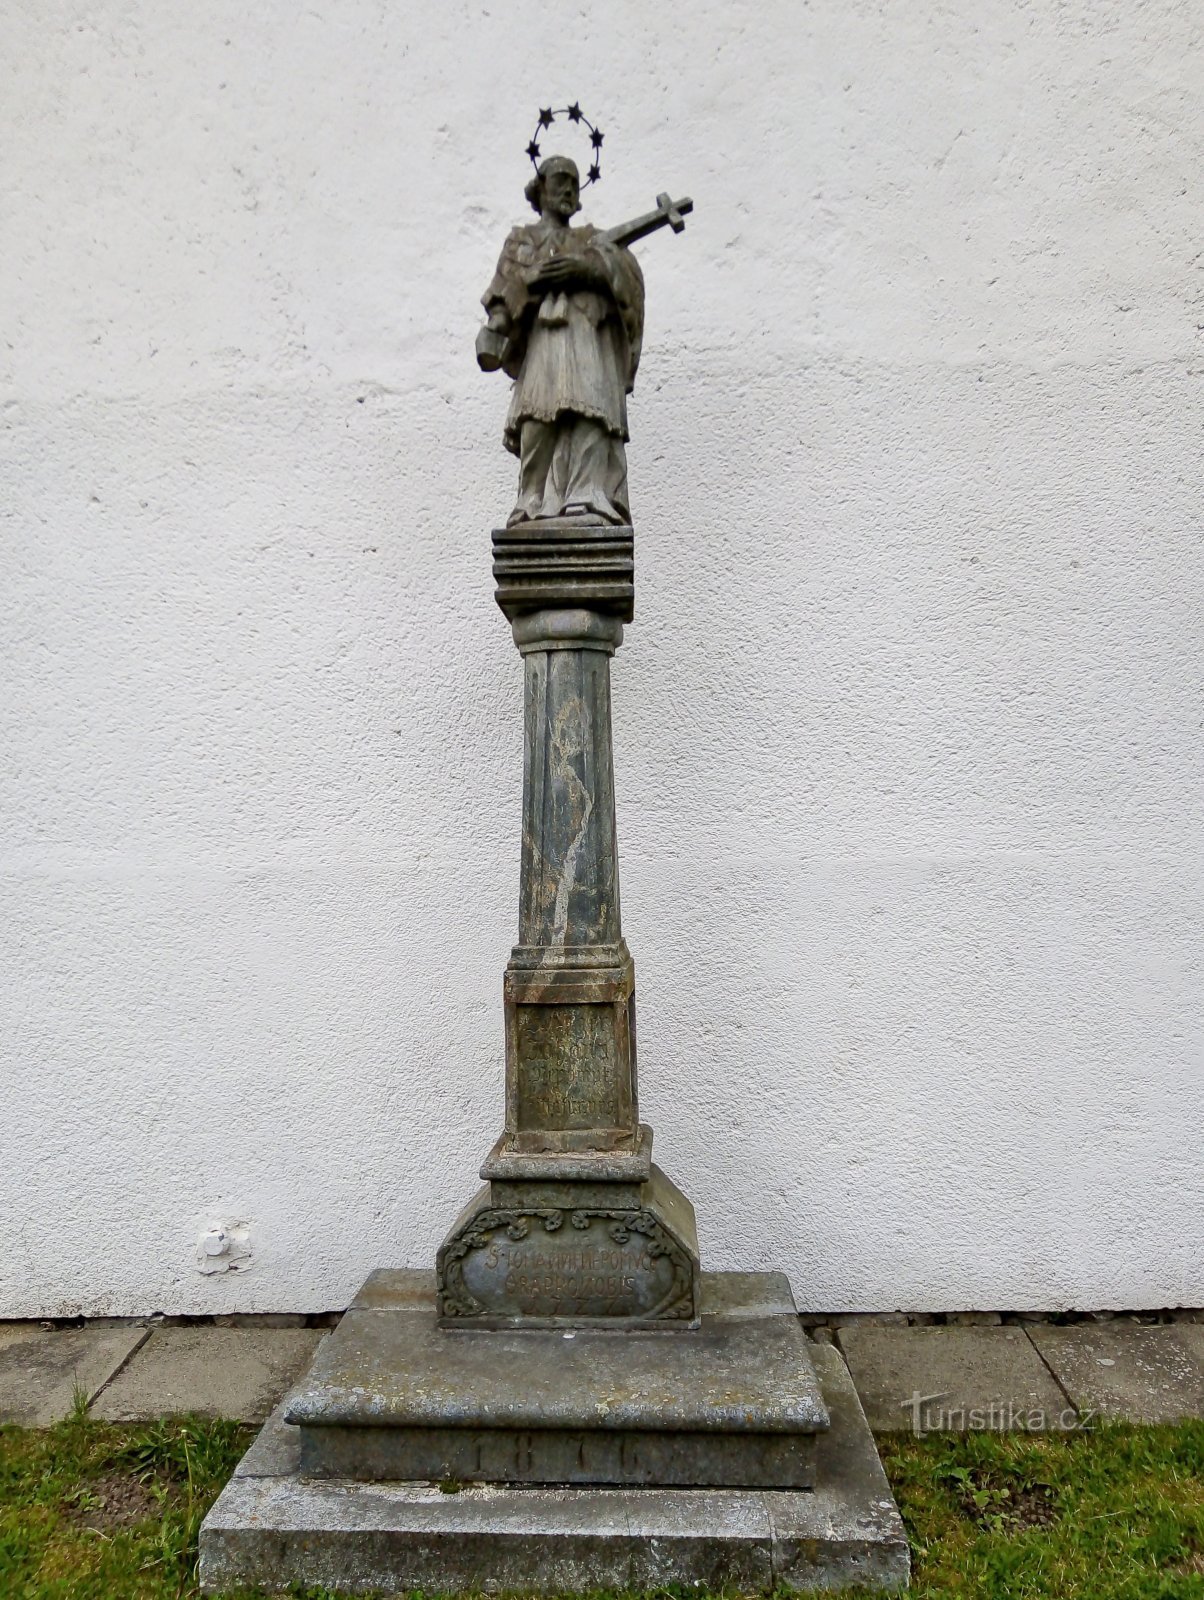 Верниржовице – статуя св. Ян Непомуцкий